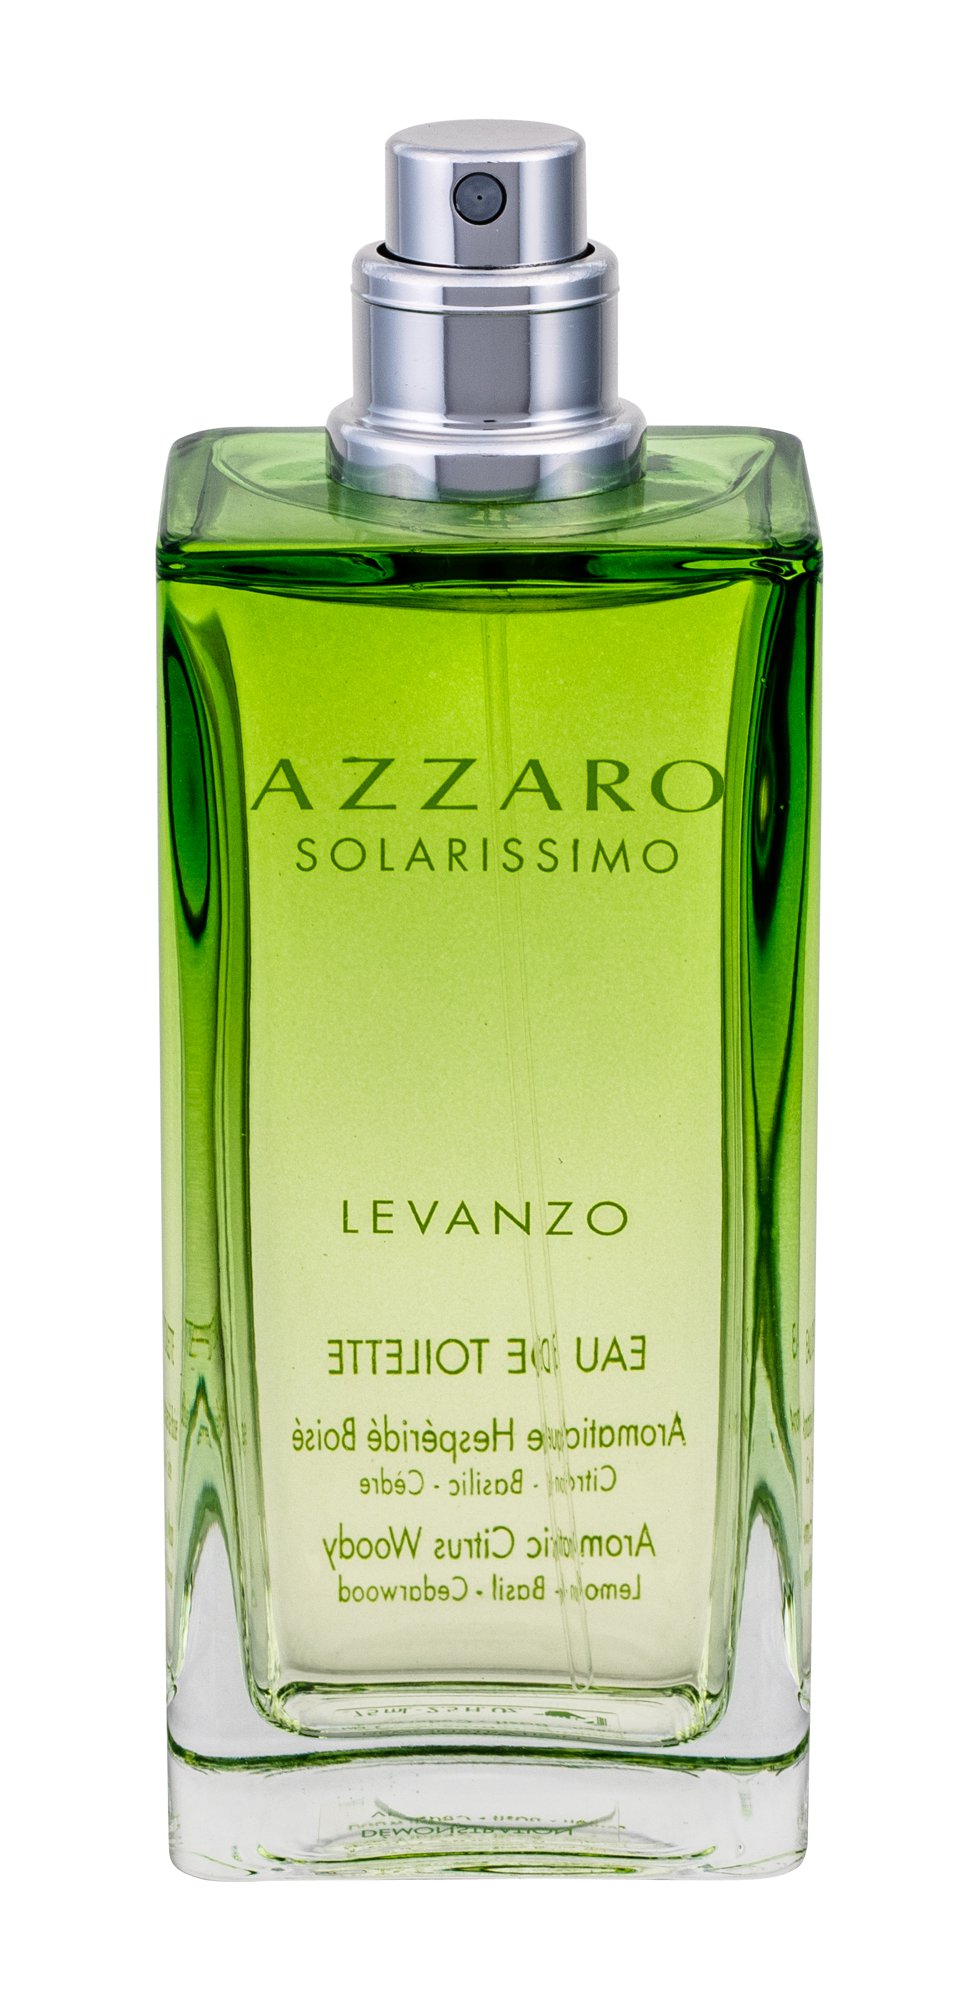 Azzaro Solarissimo Levanzo, Toaletní voda 75ml